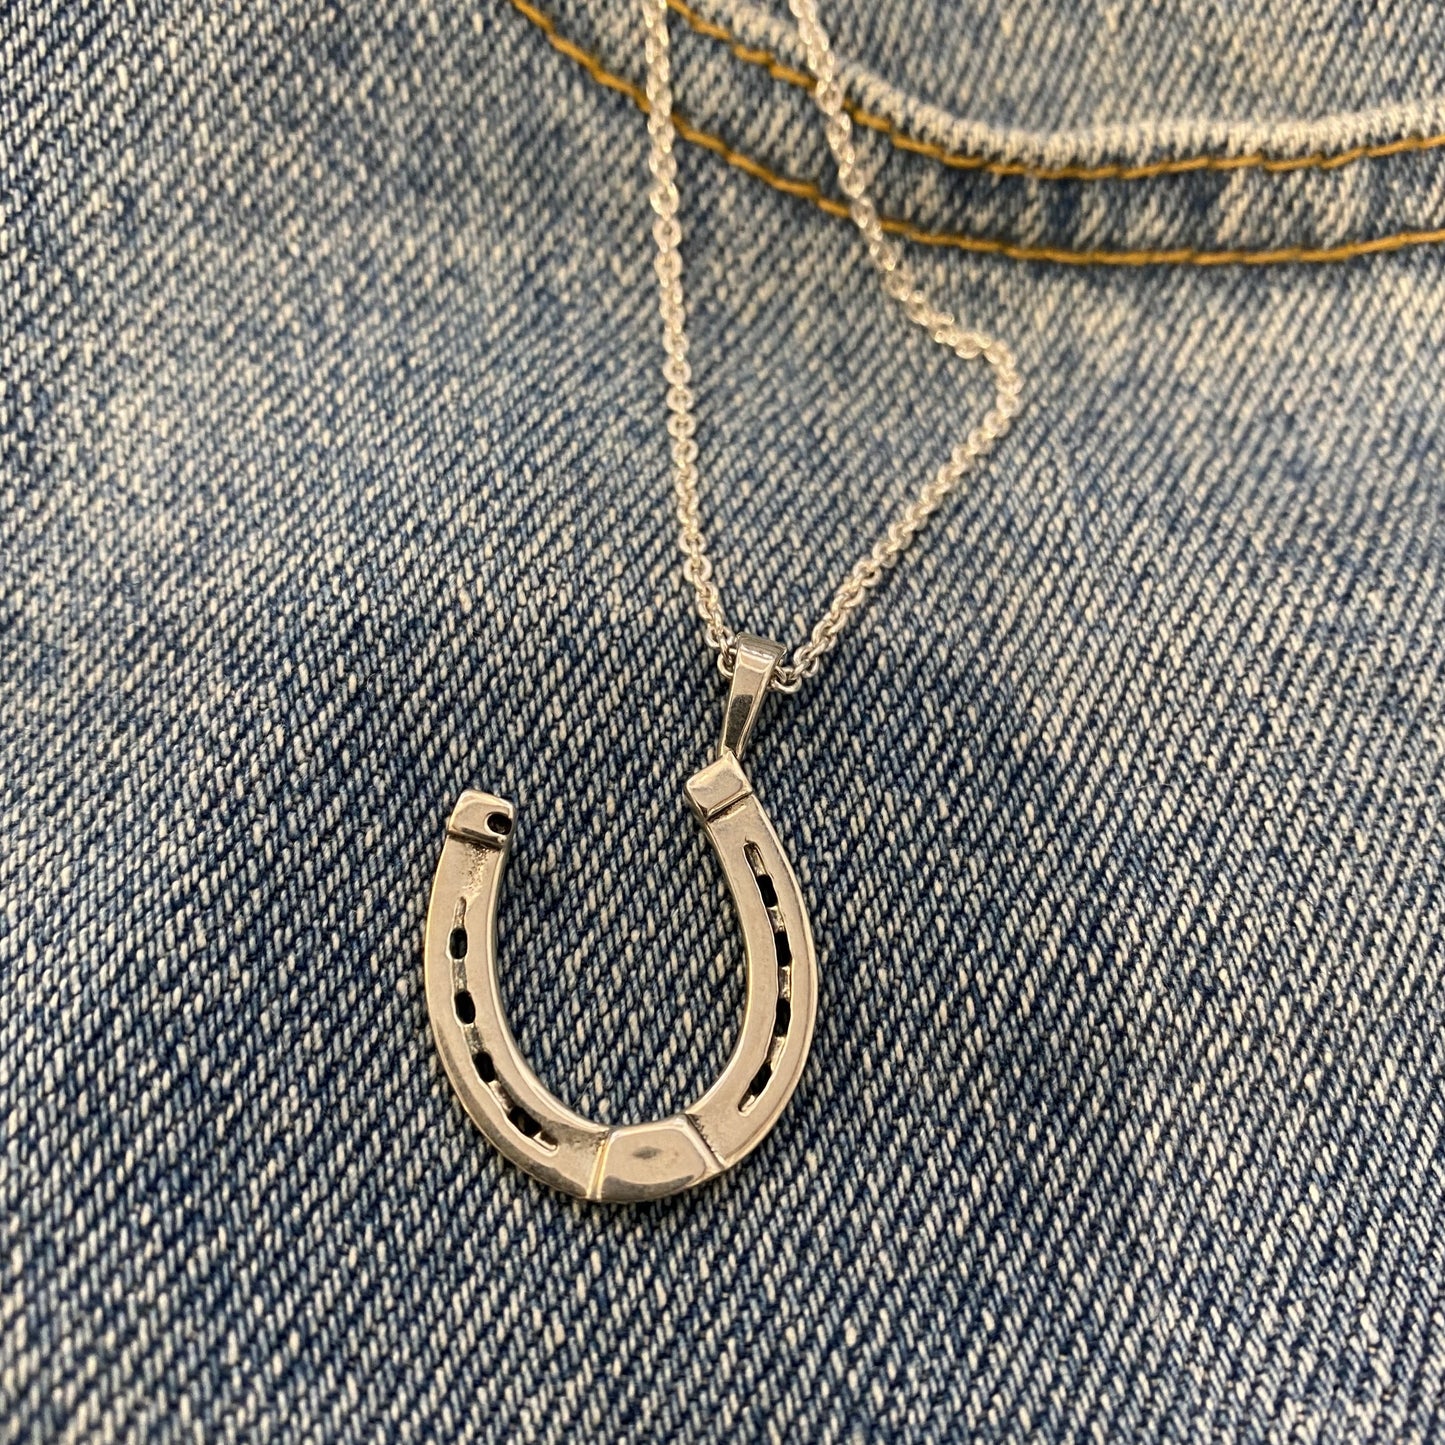 Horseshoe Necklace - Heavy